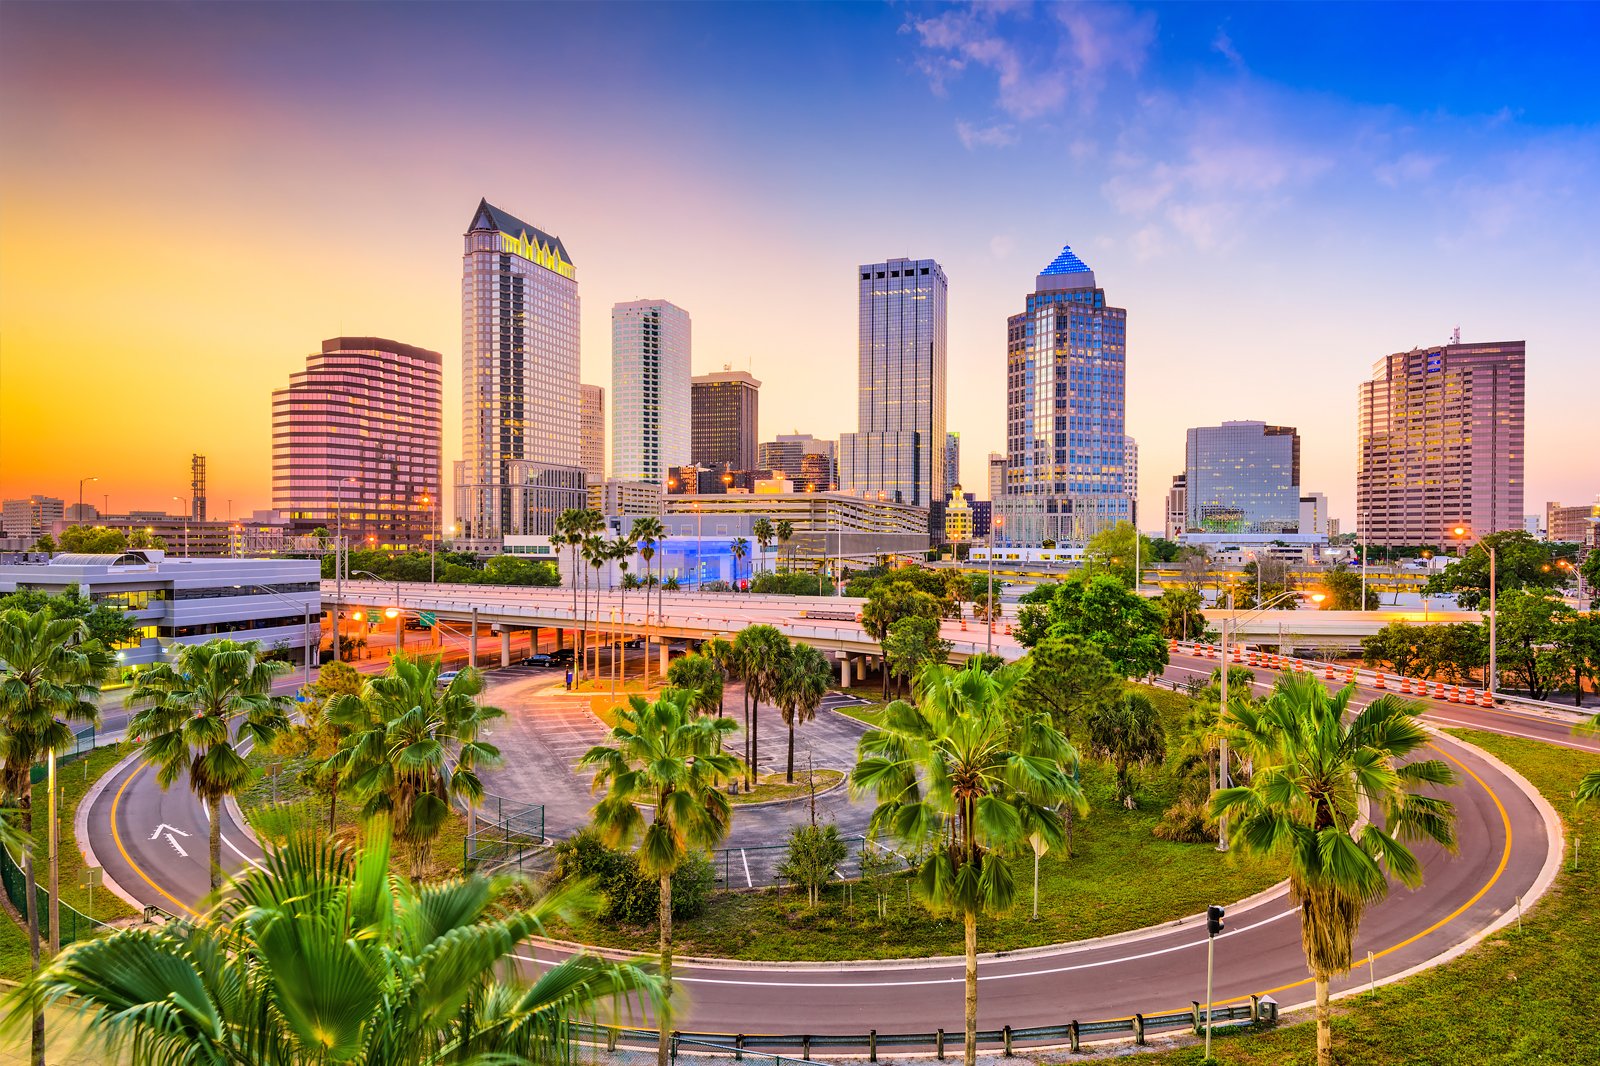 Tampa, FL skyline